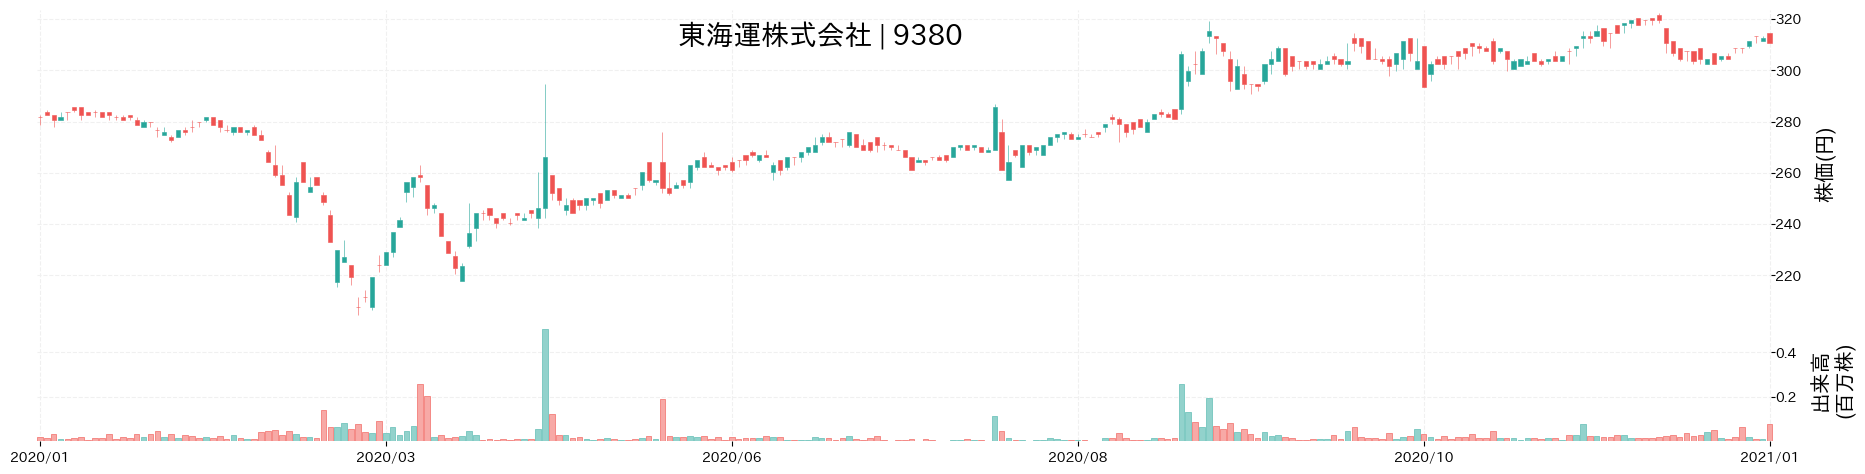 東 海運の株価推移(2020)